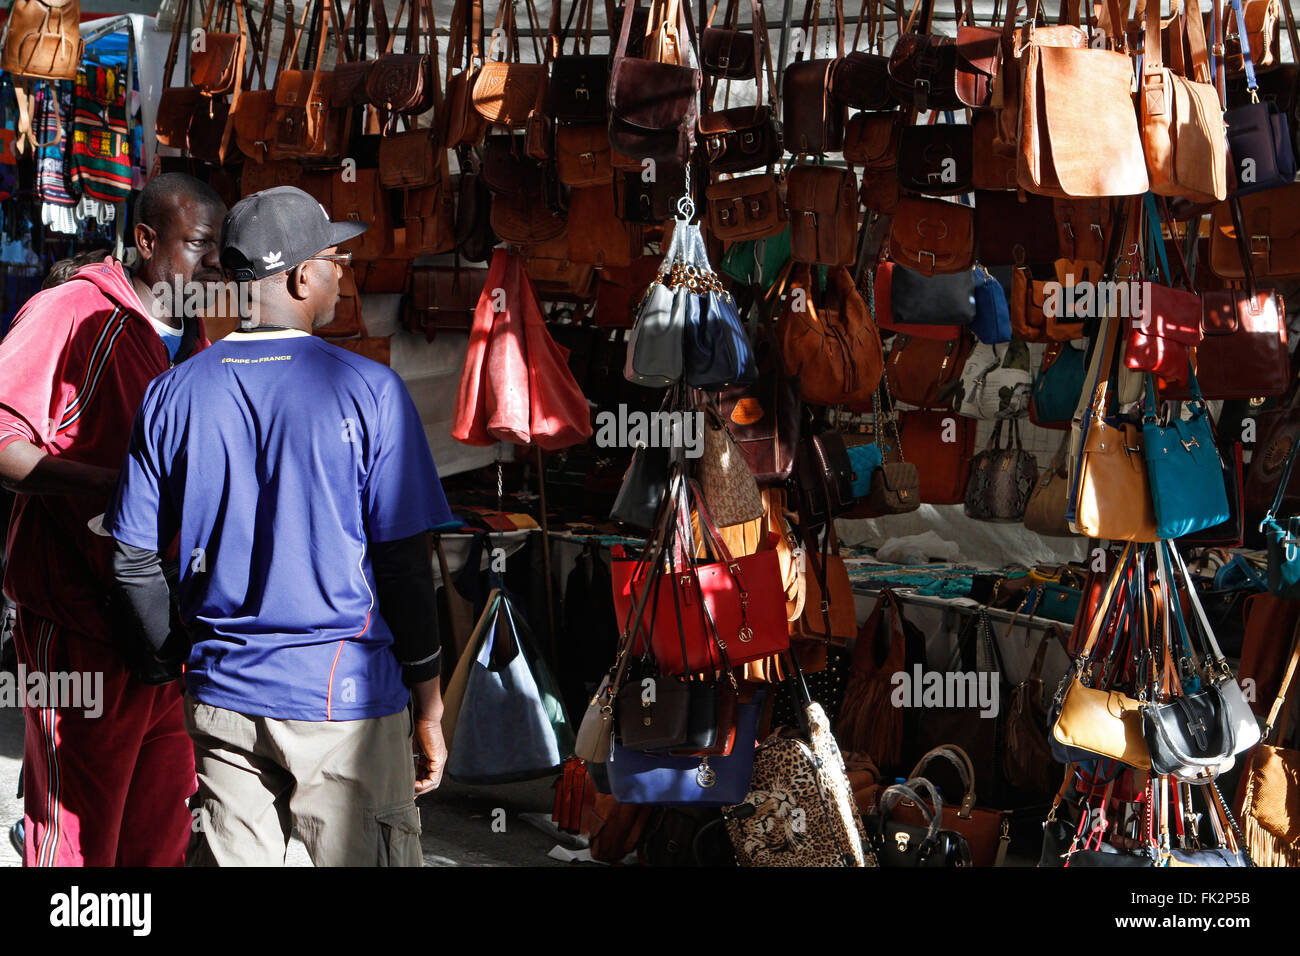 Borsetta shop. La popolazione nera in un negozio di borse in un mercato tradizionale per le strade di Palma di Maiorca. Foto Stock